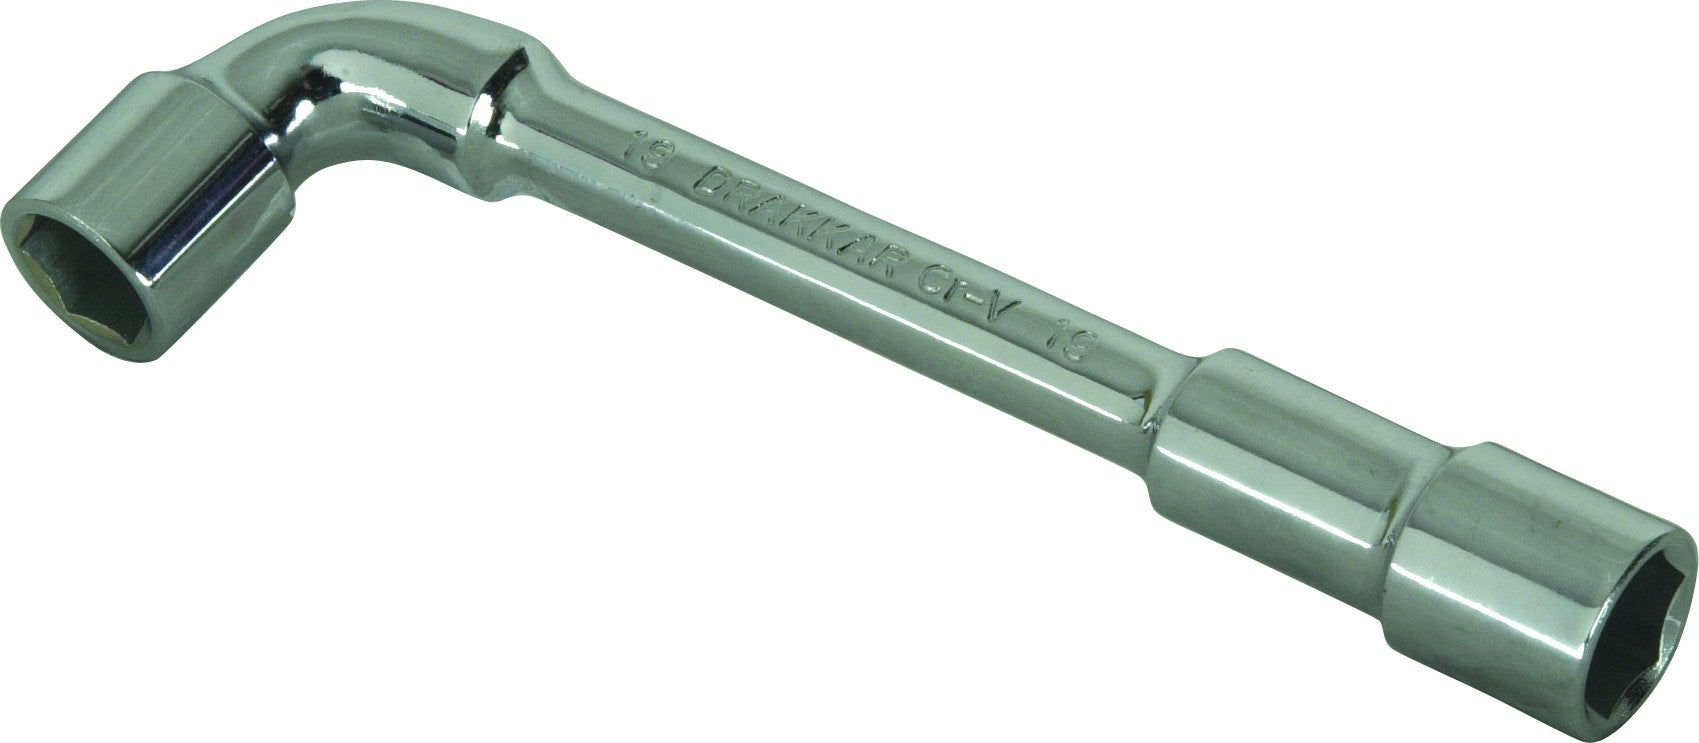 Clé à pipe - AMPRO - T41813 - 13mm - Acier chrome vanadium